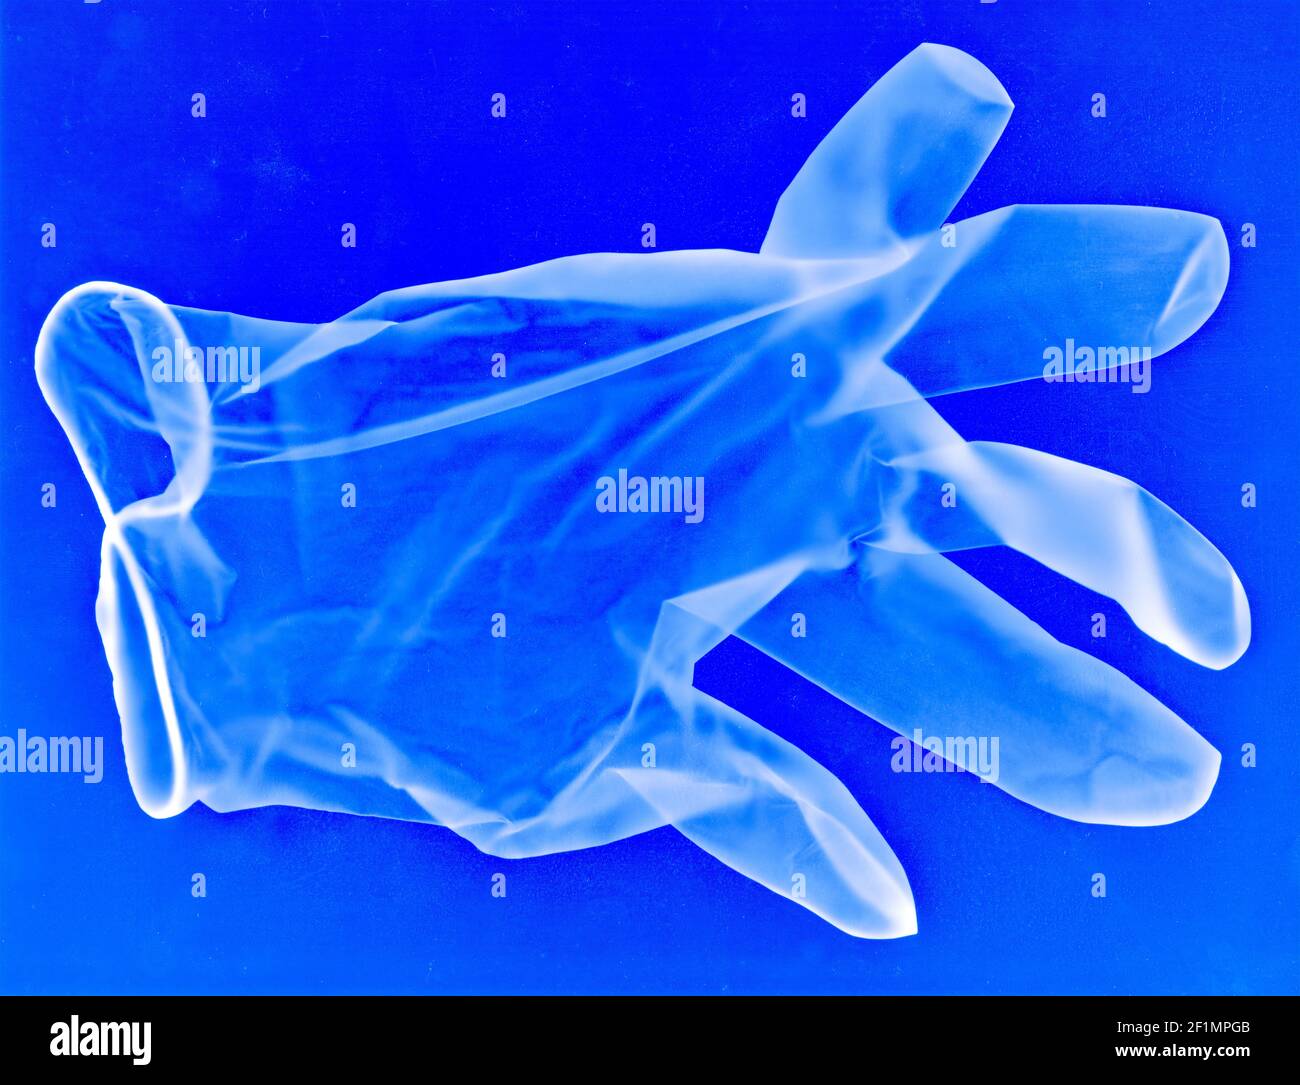 Guanto blu monouso in lattice per uso medico come immagine a raggi X con possibili virus, contaminazione e particelle. Foto Stock